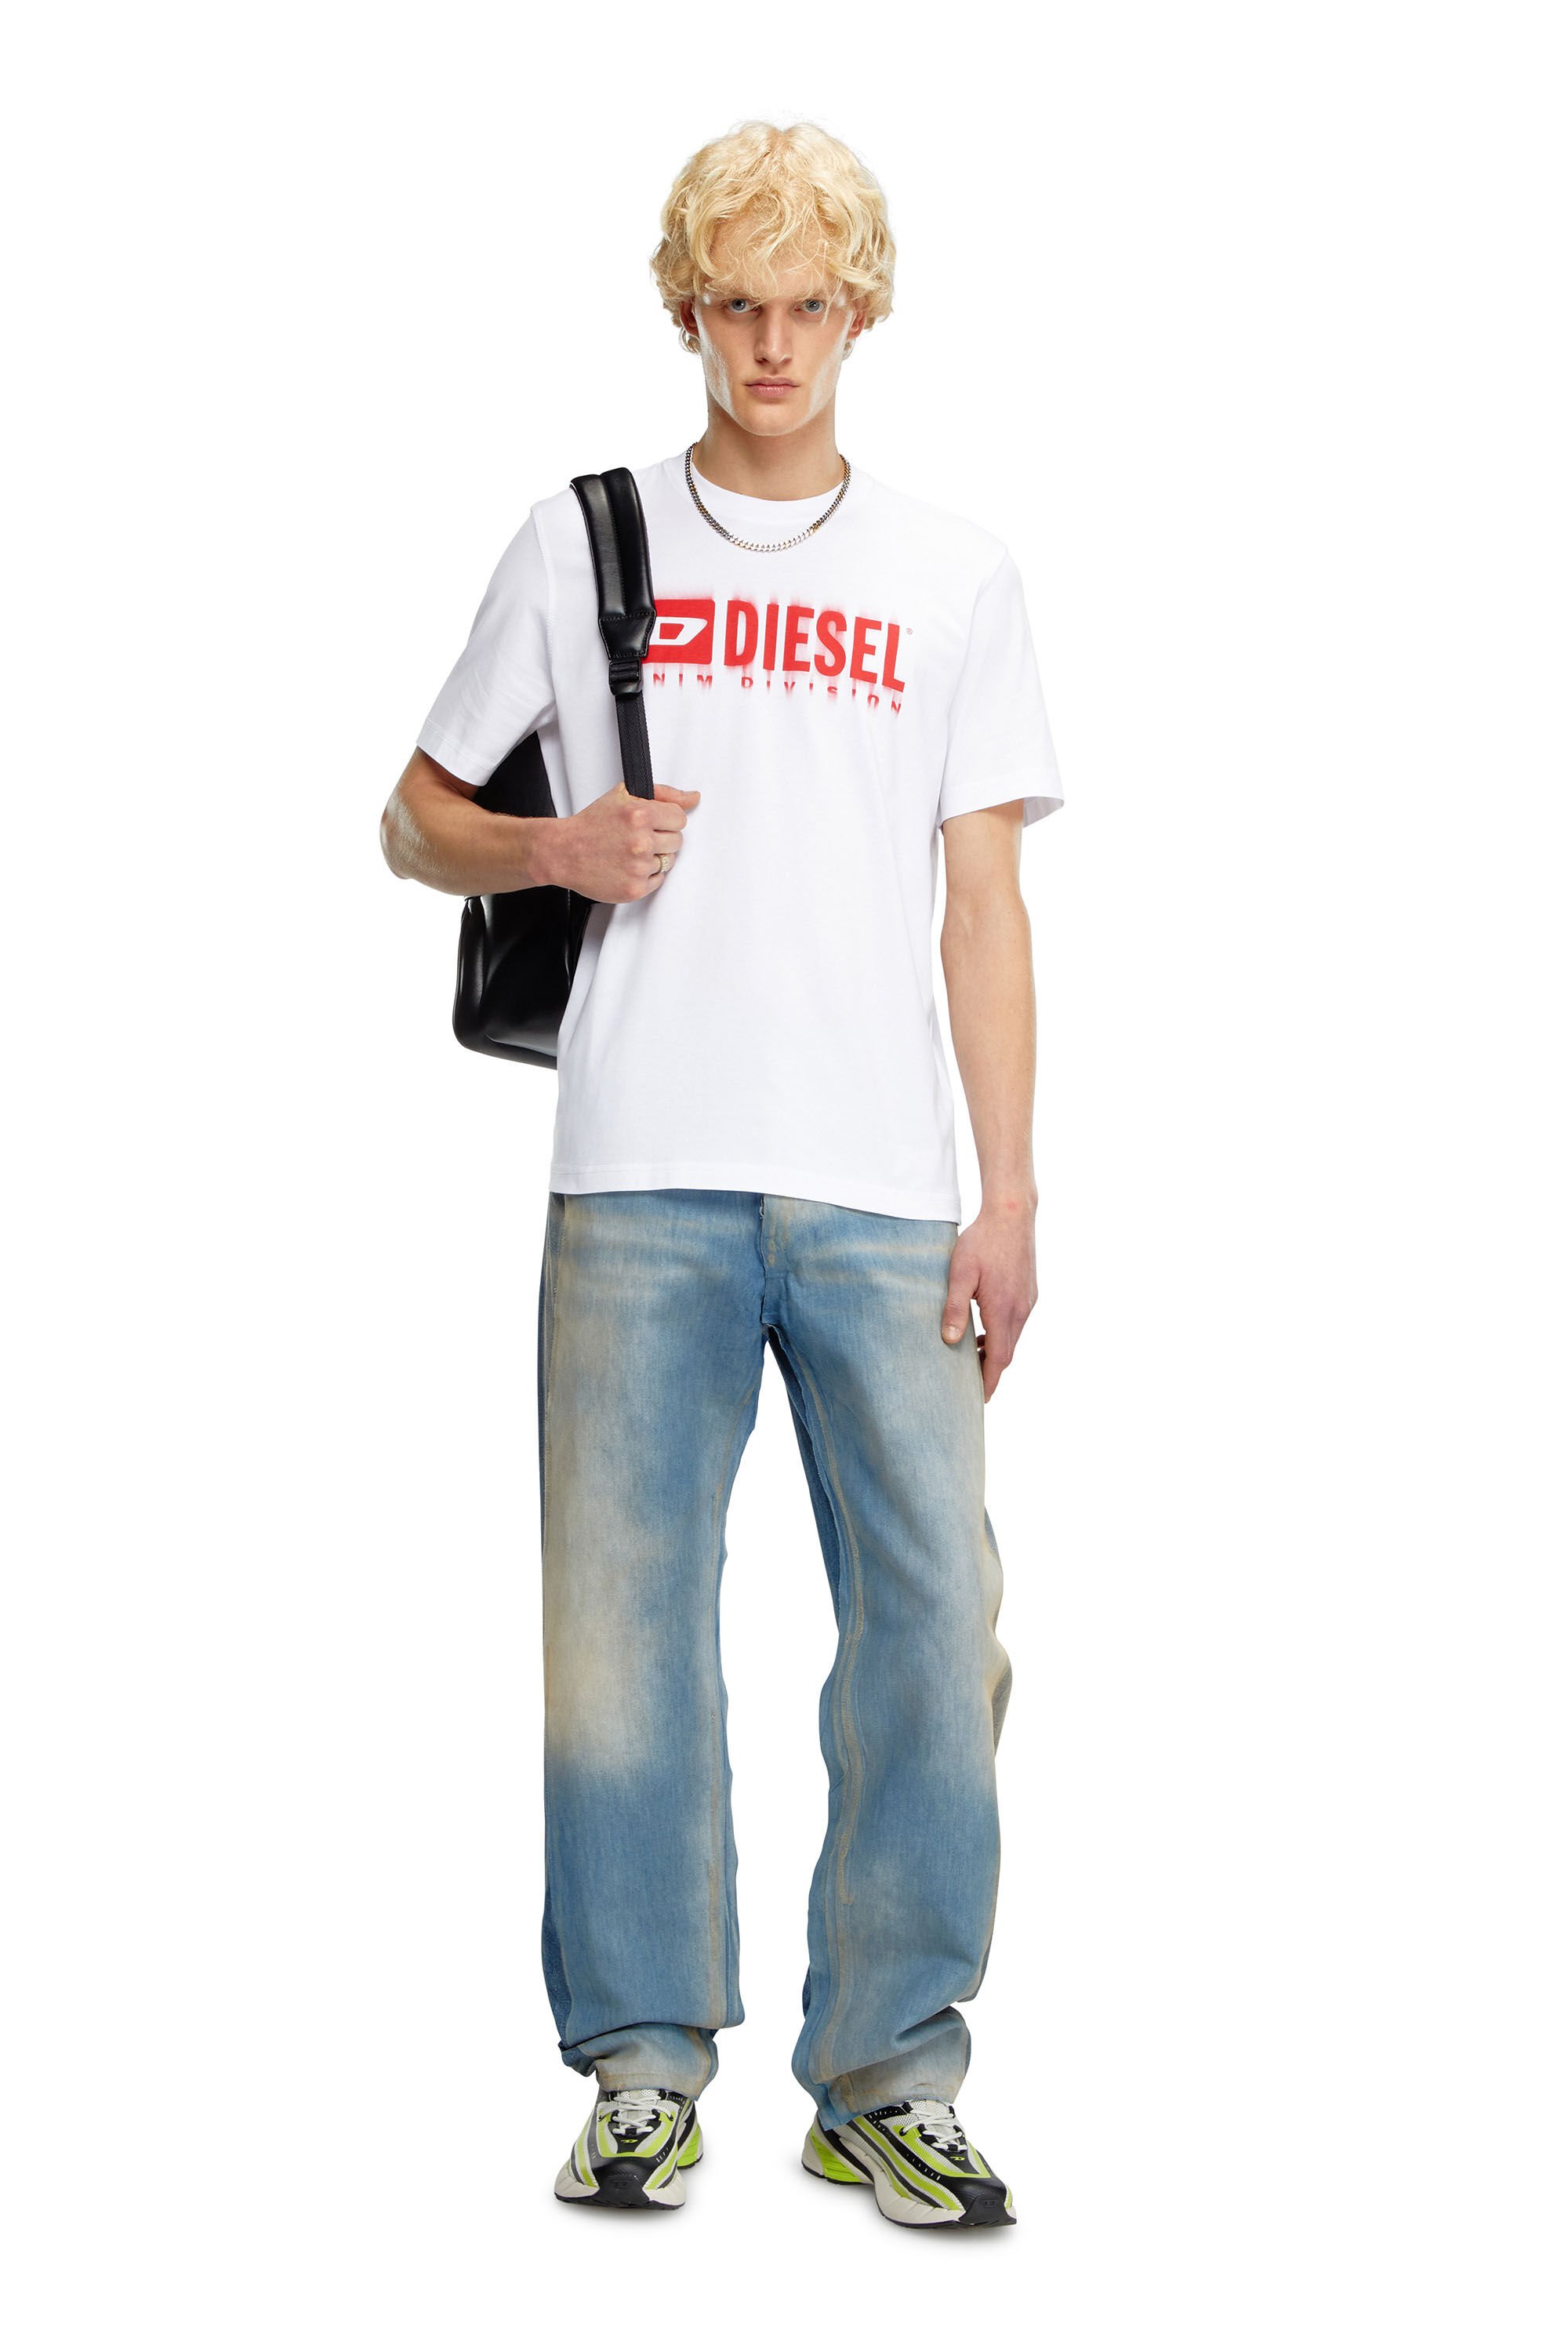 Diesel - T-ADJUST-Q7, Man T-shirt with blurry Diesel logo in White - Image 1